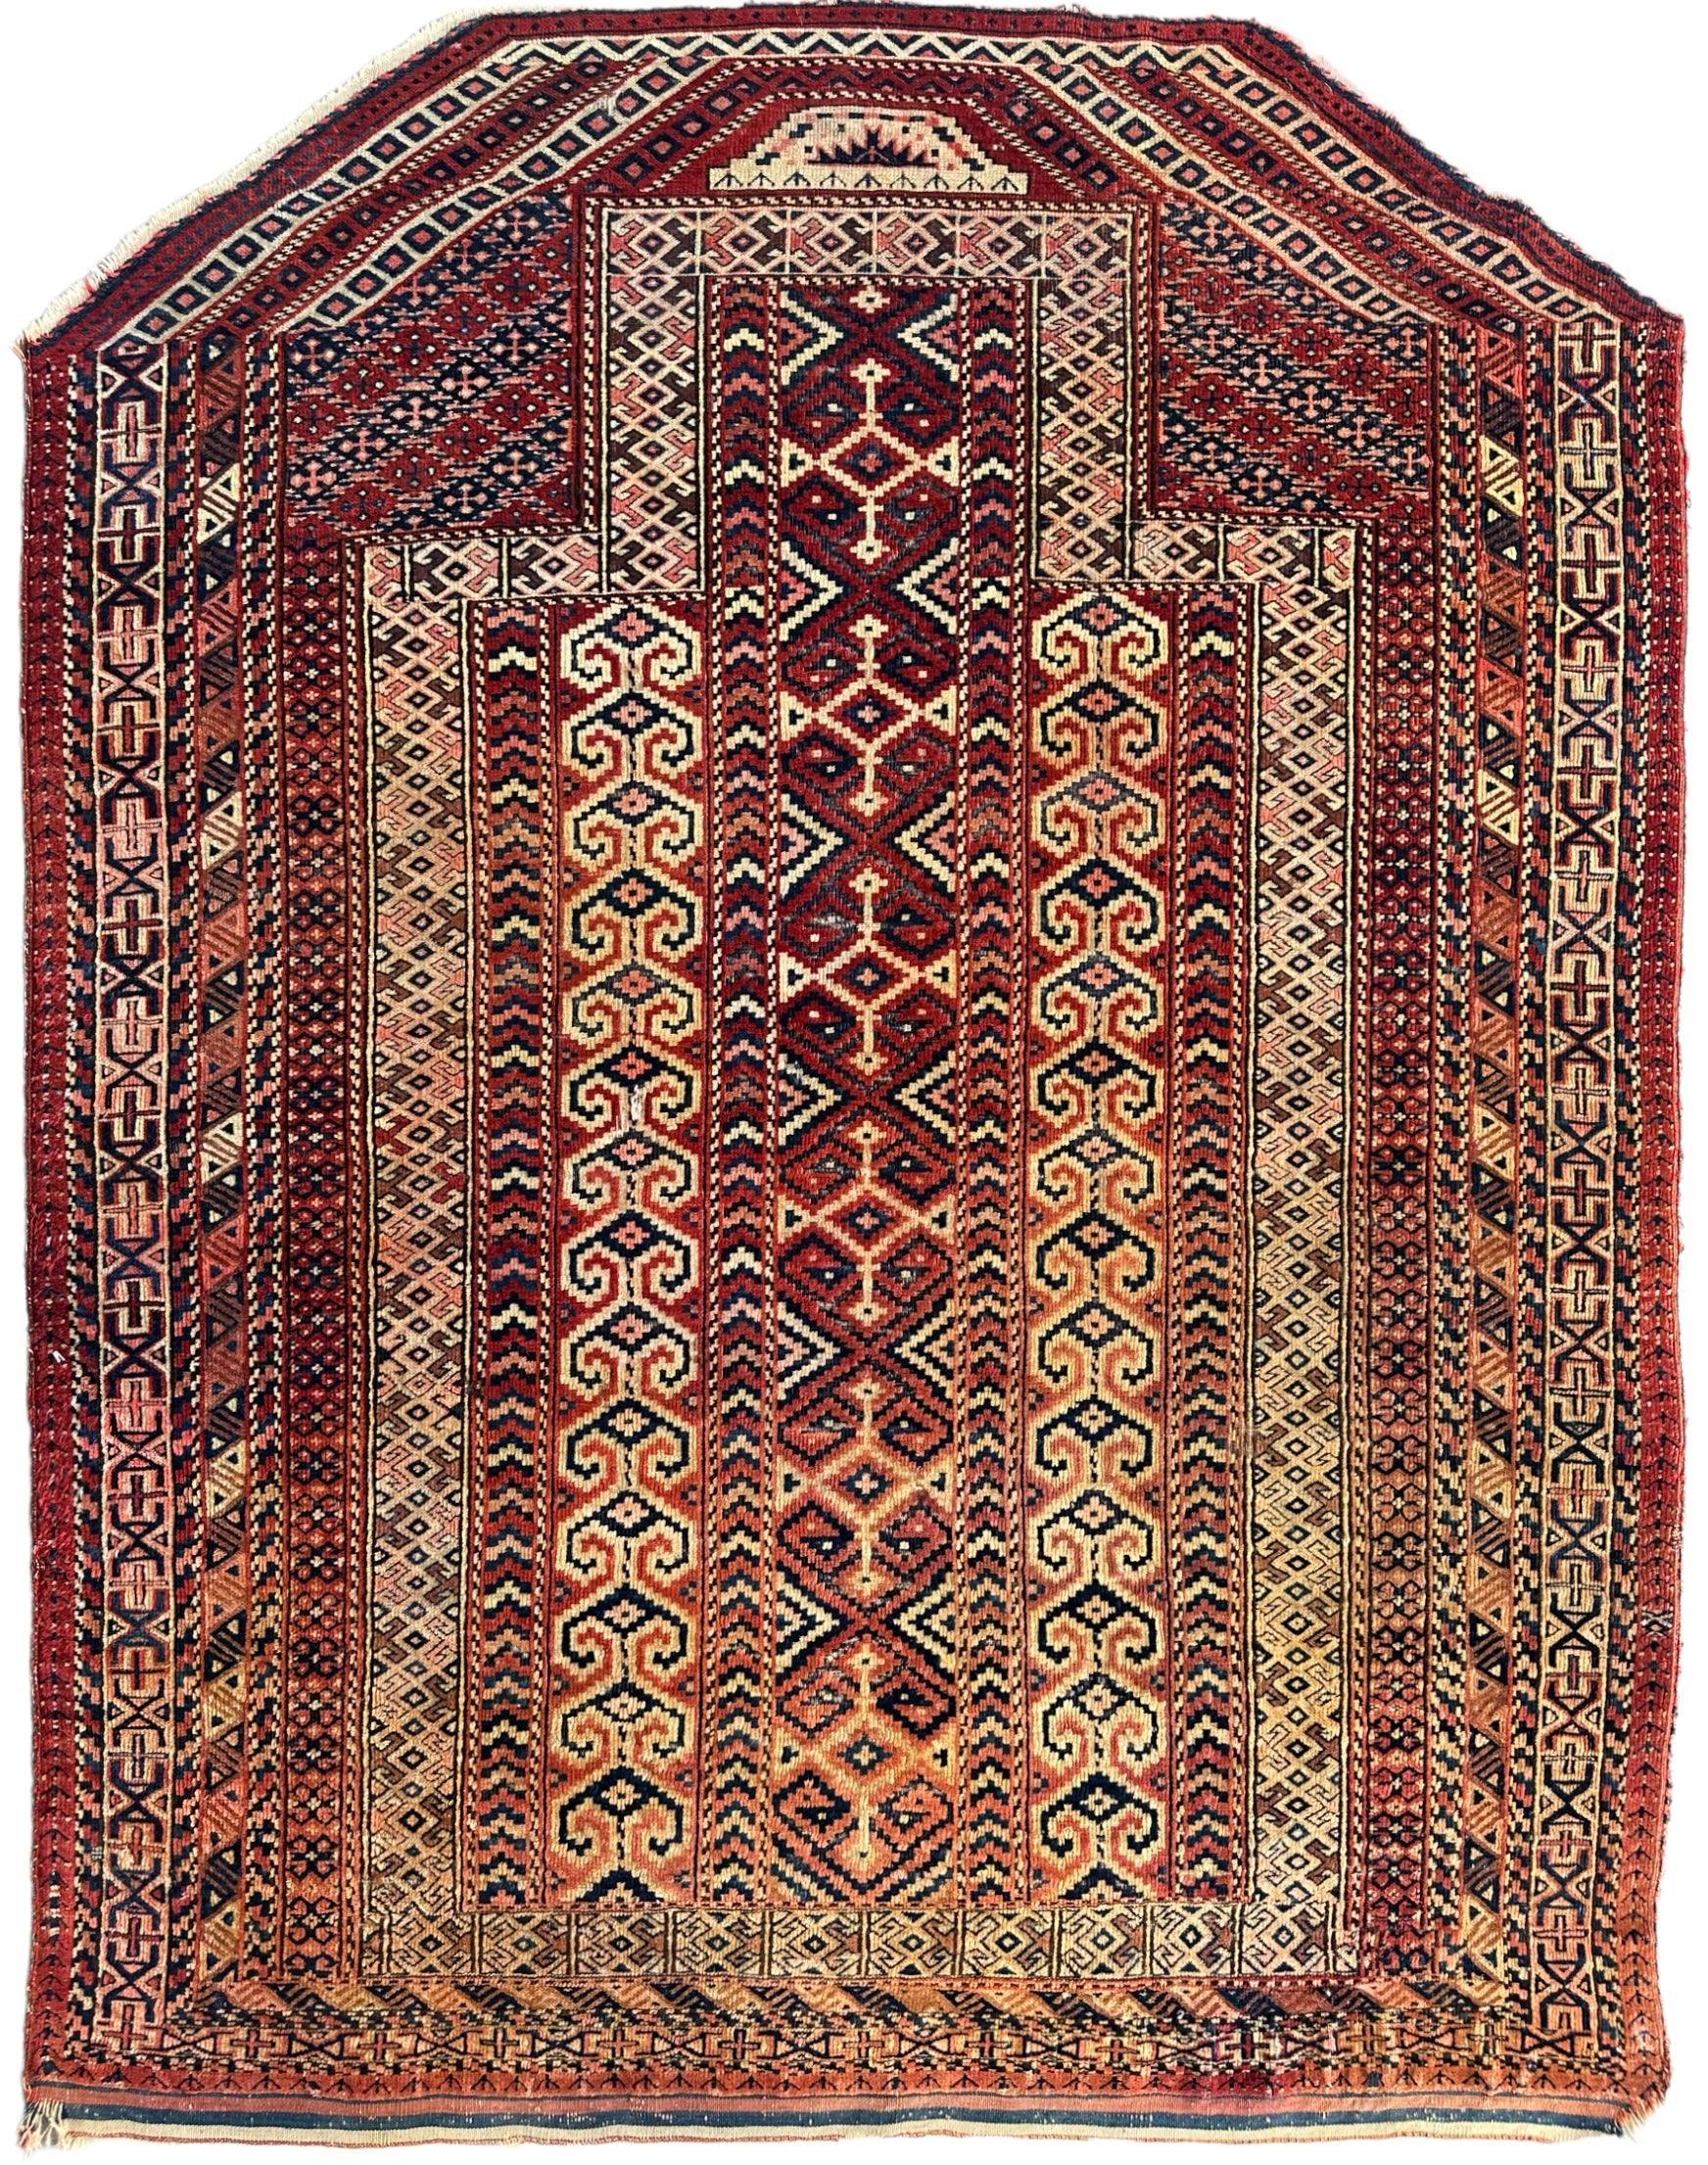 Antique 1890’s Turkoman Prayer Rug or Namazlyk 4’ x 5’2”